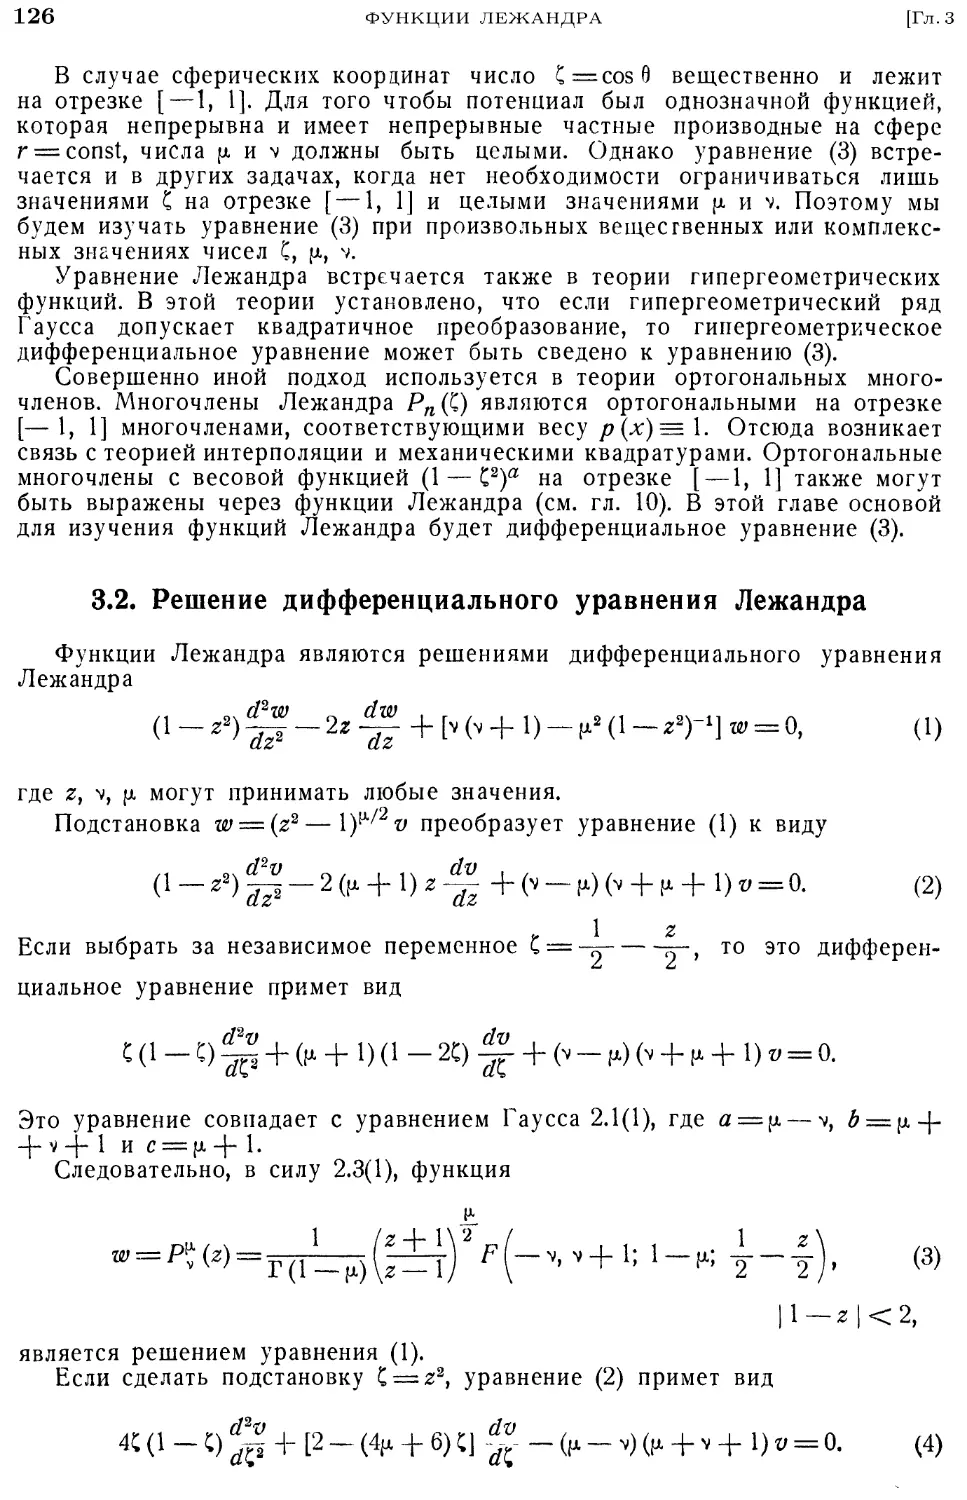 3.2. Решение дифференциального уравнения Лежандра